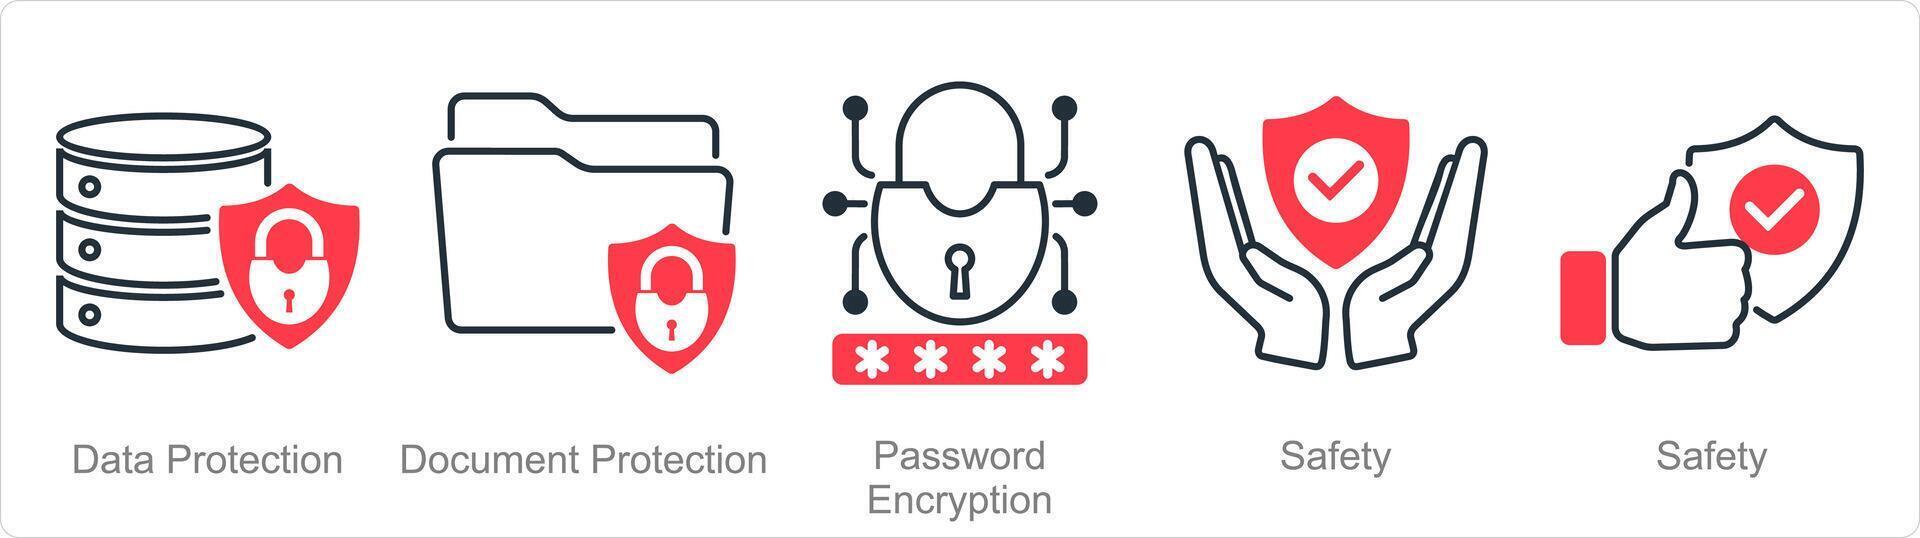 uma conjunto do 5 segurança ícones Como dados proteção, documento proteção, senha criptografia vetor